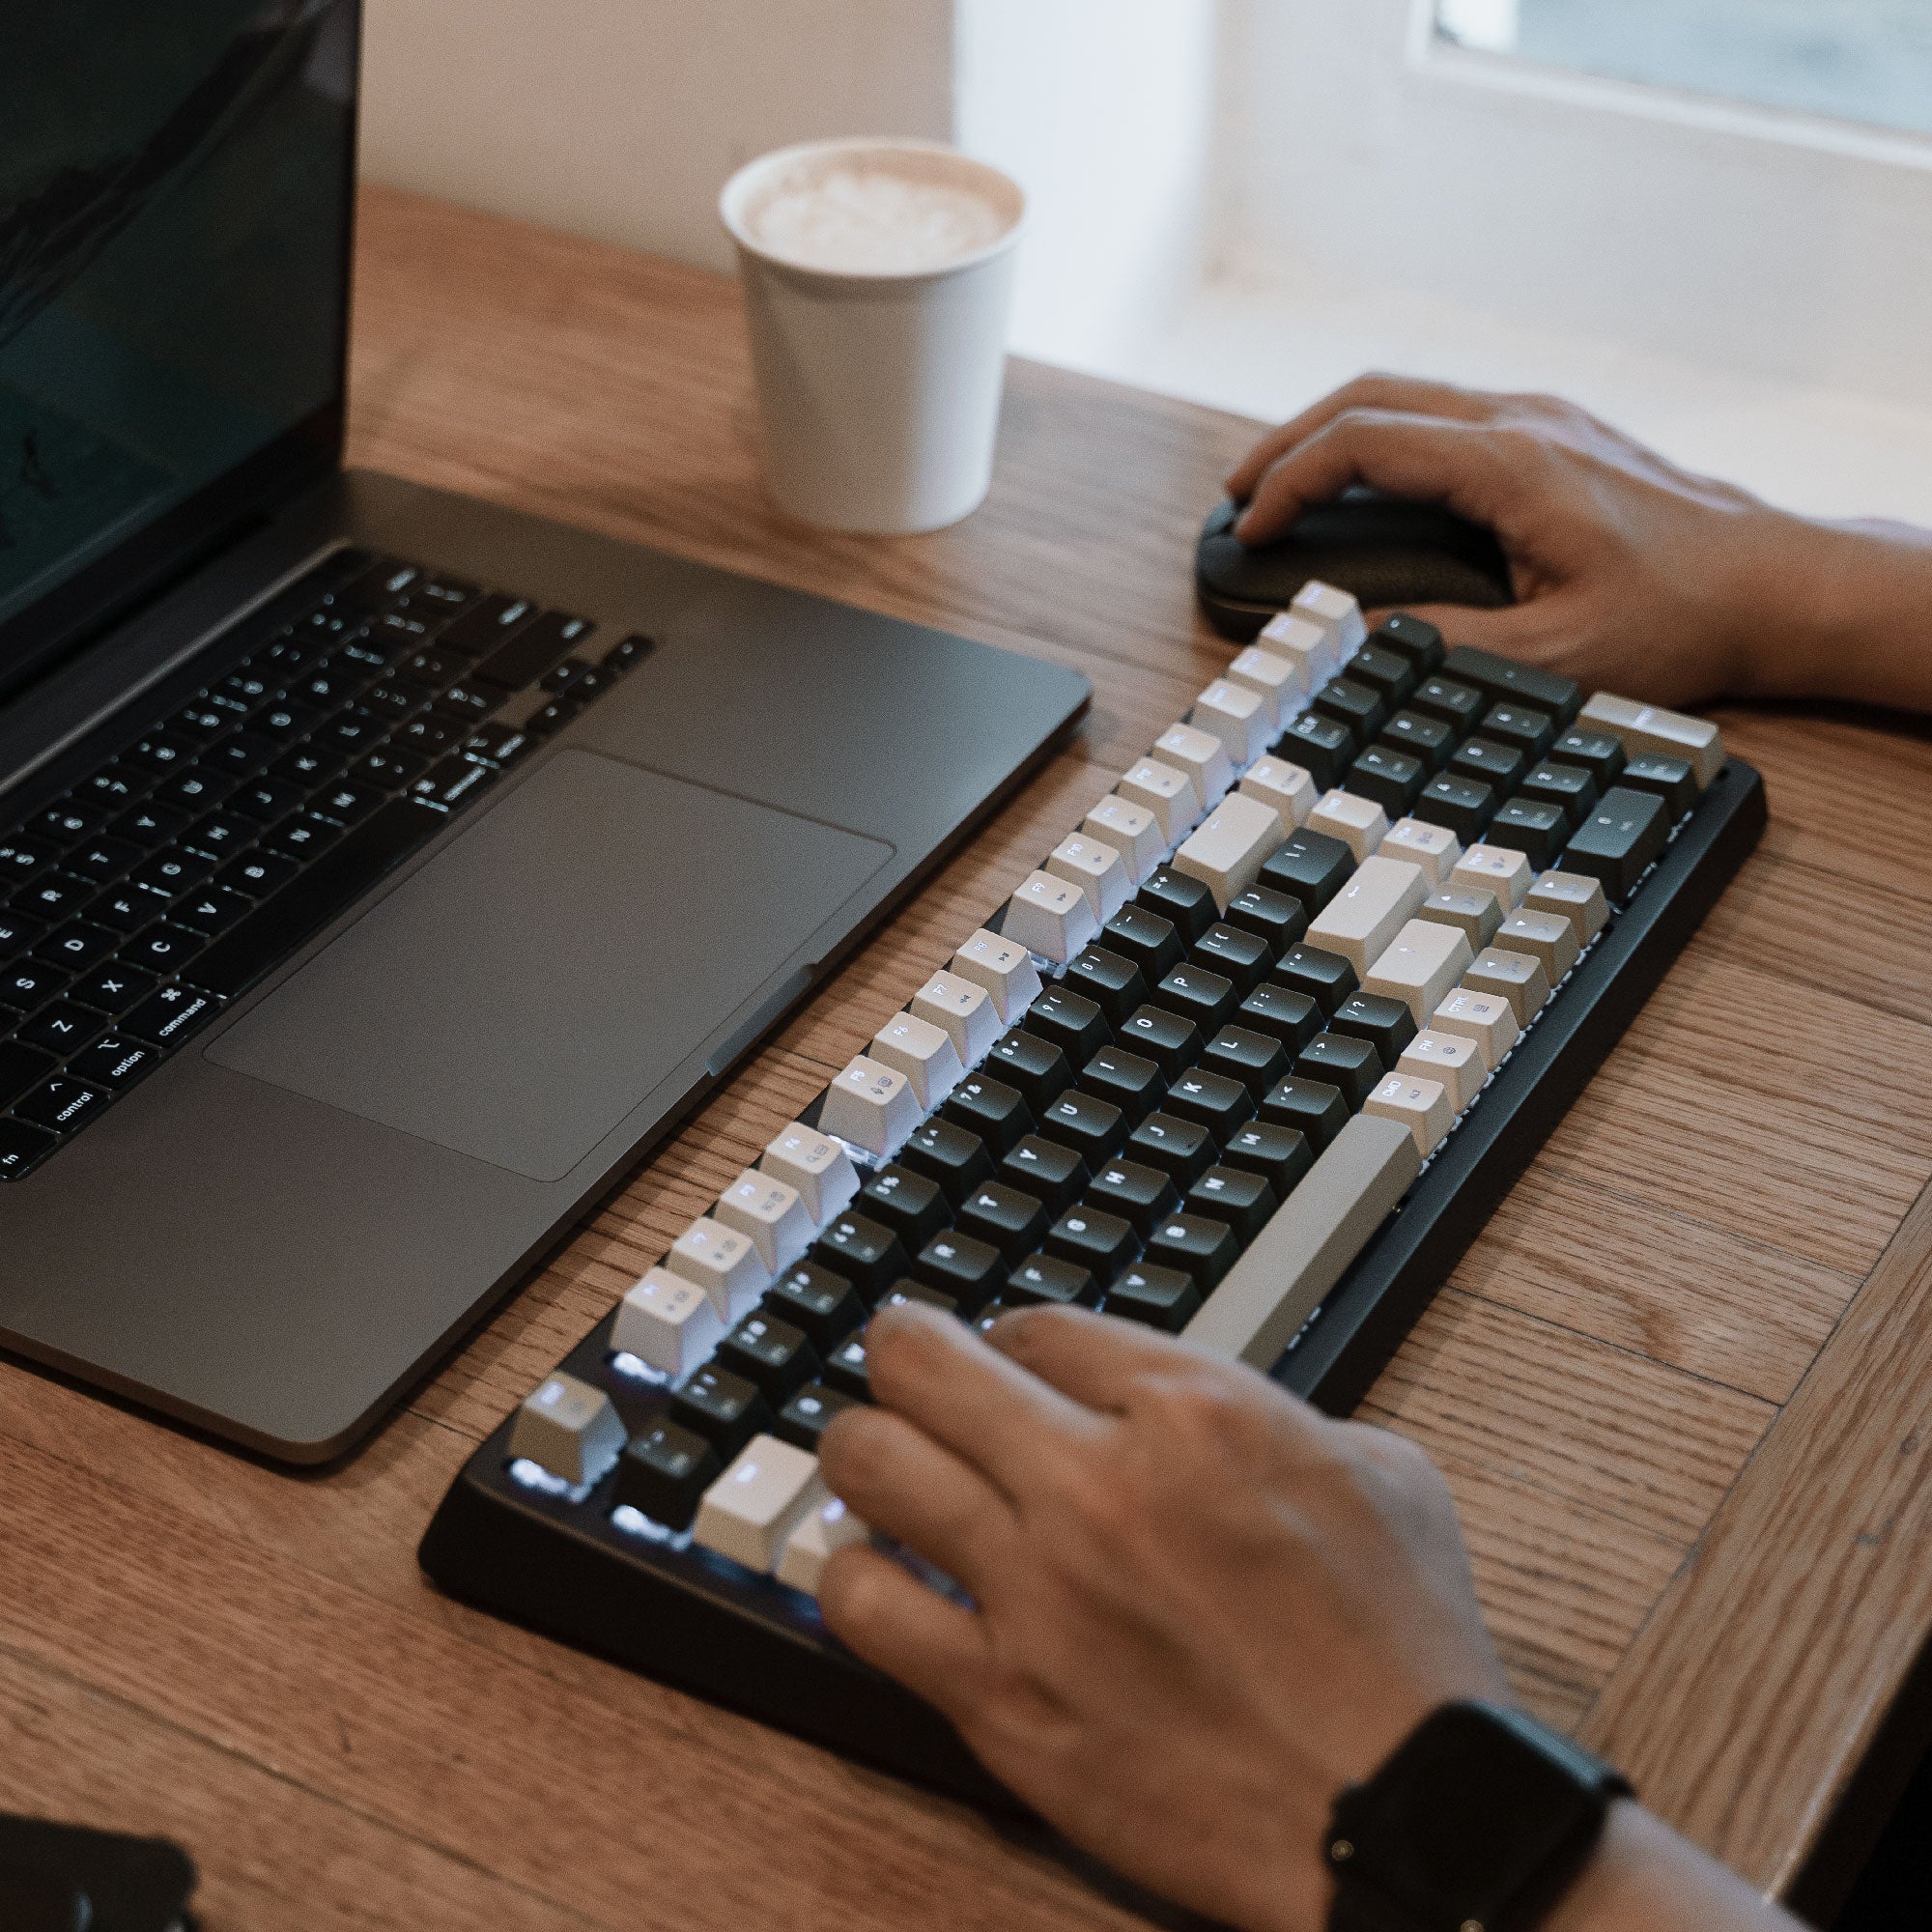 لوحة مفاتيح Cascade لاسلكية قابلة للتبديل السريع بنسبة 98%